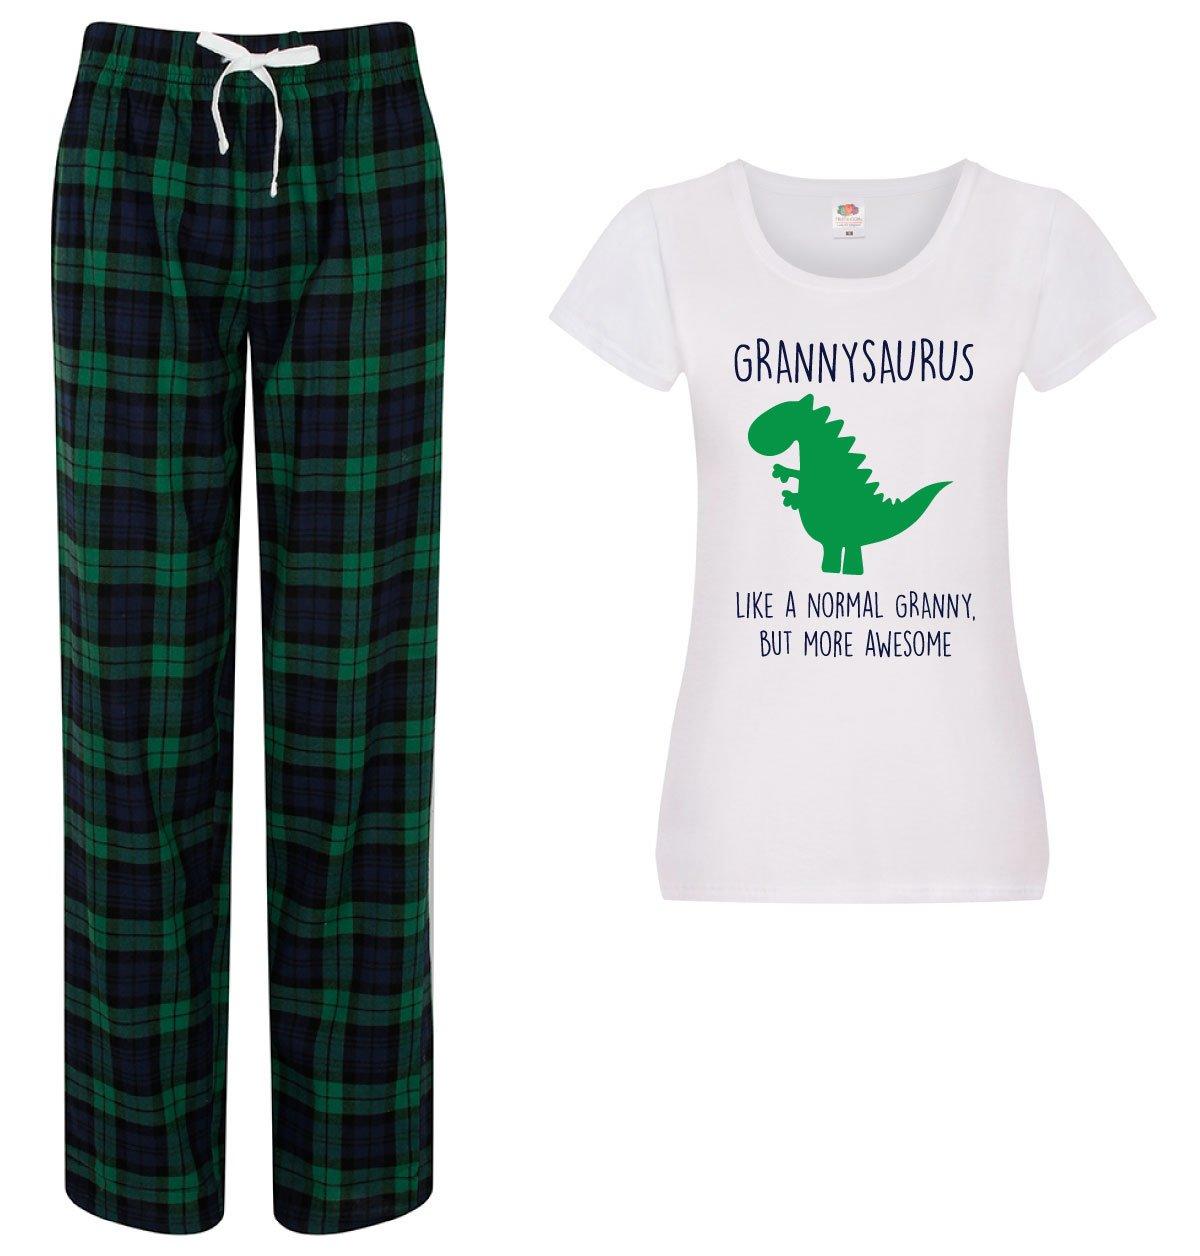 Grannysaurus Granny Dinosaur Pyjamas